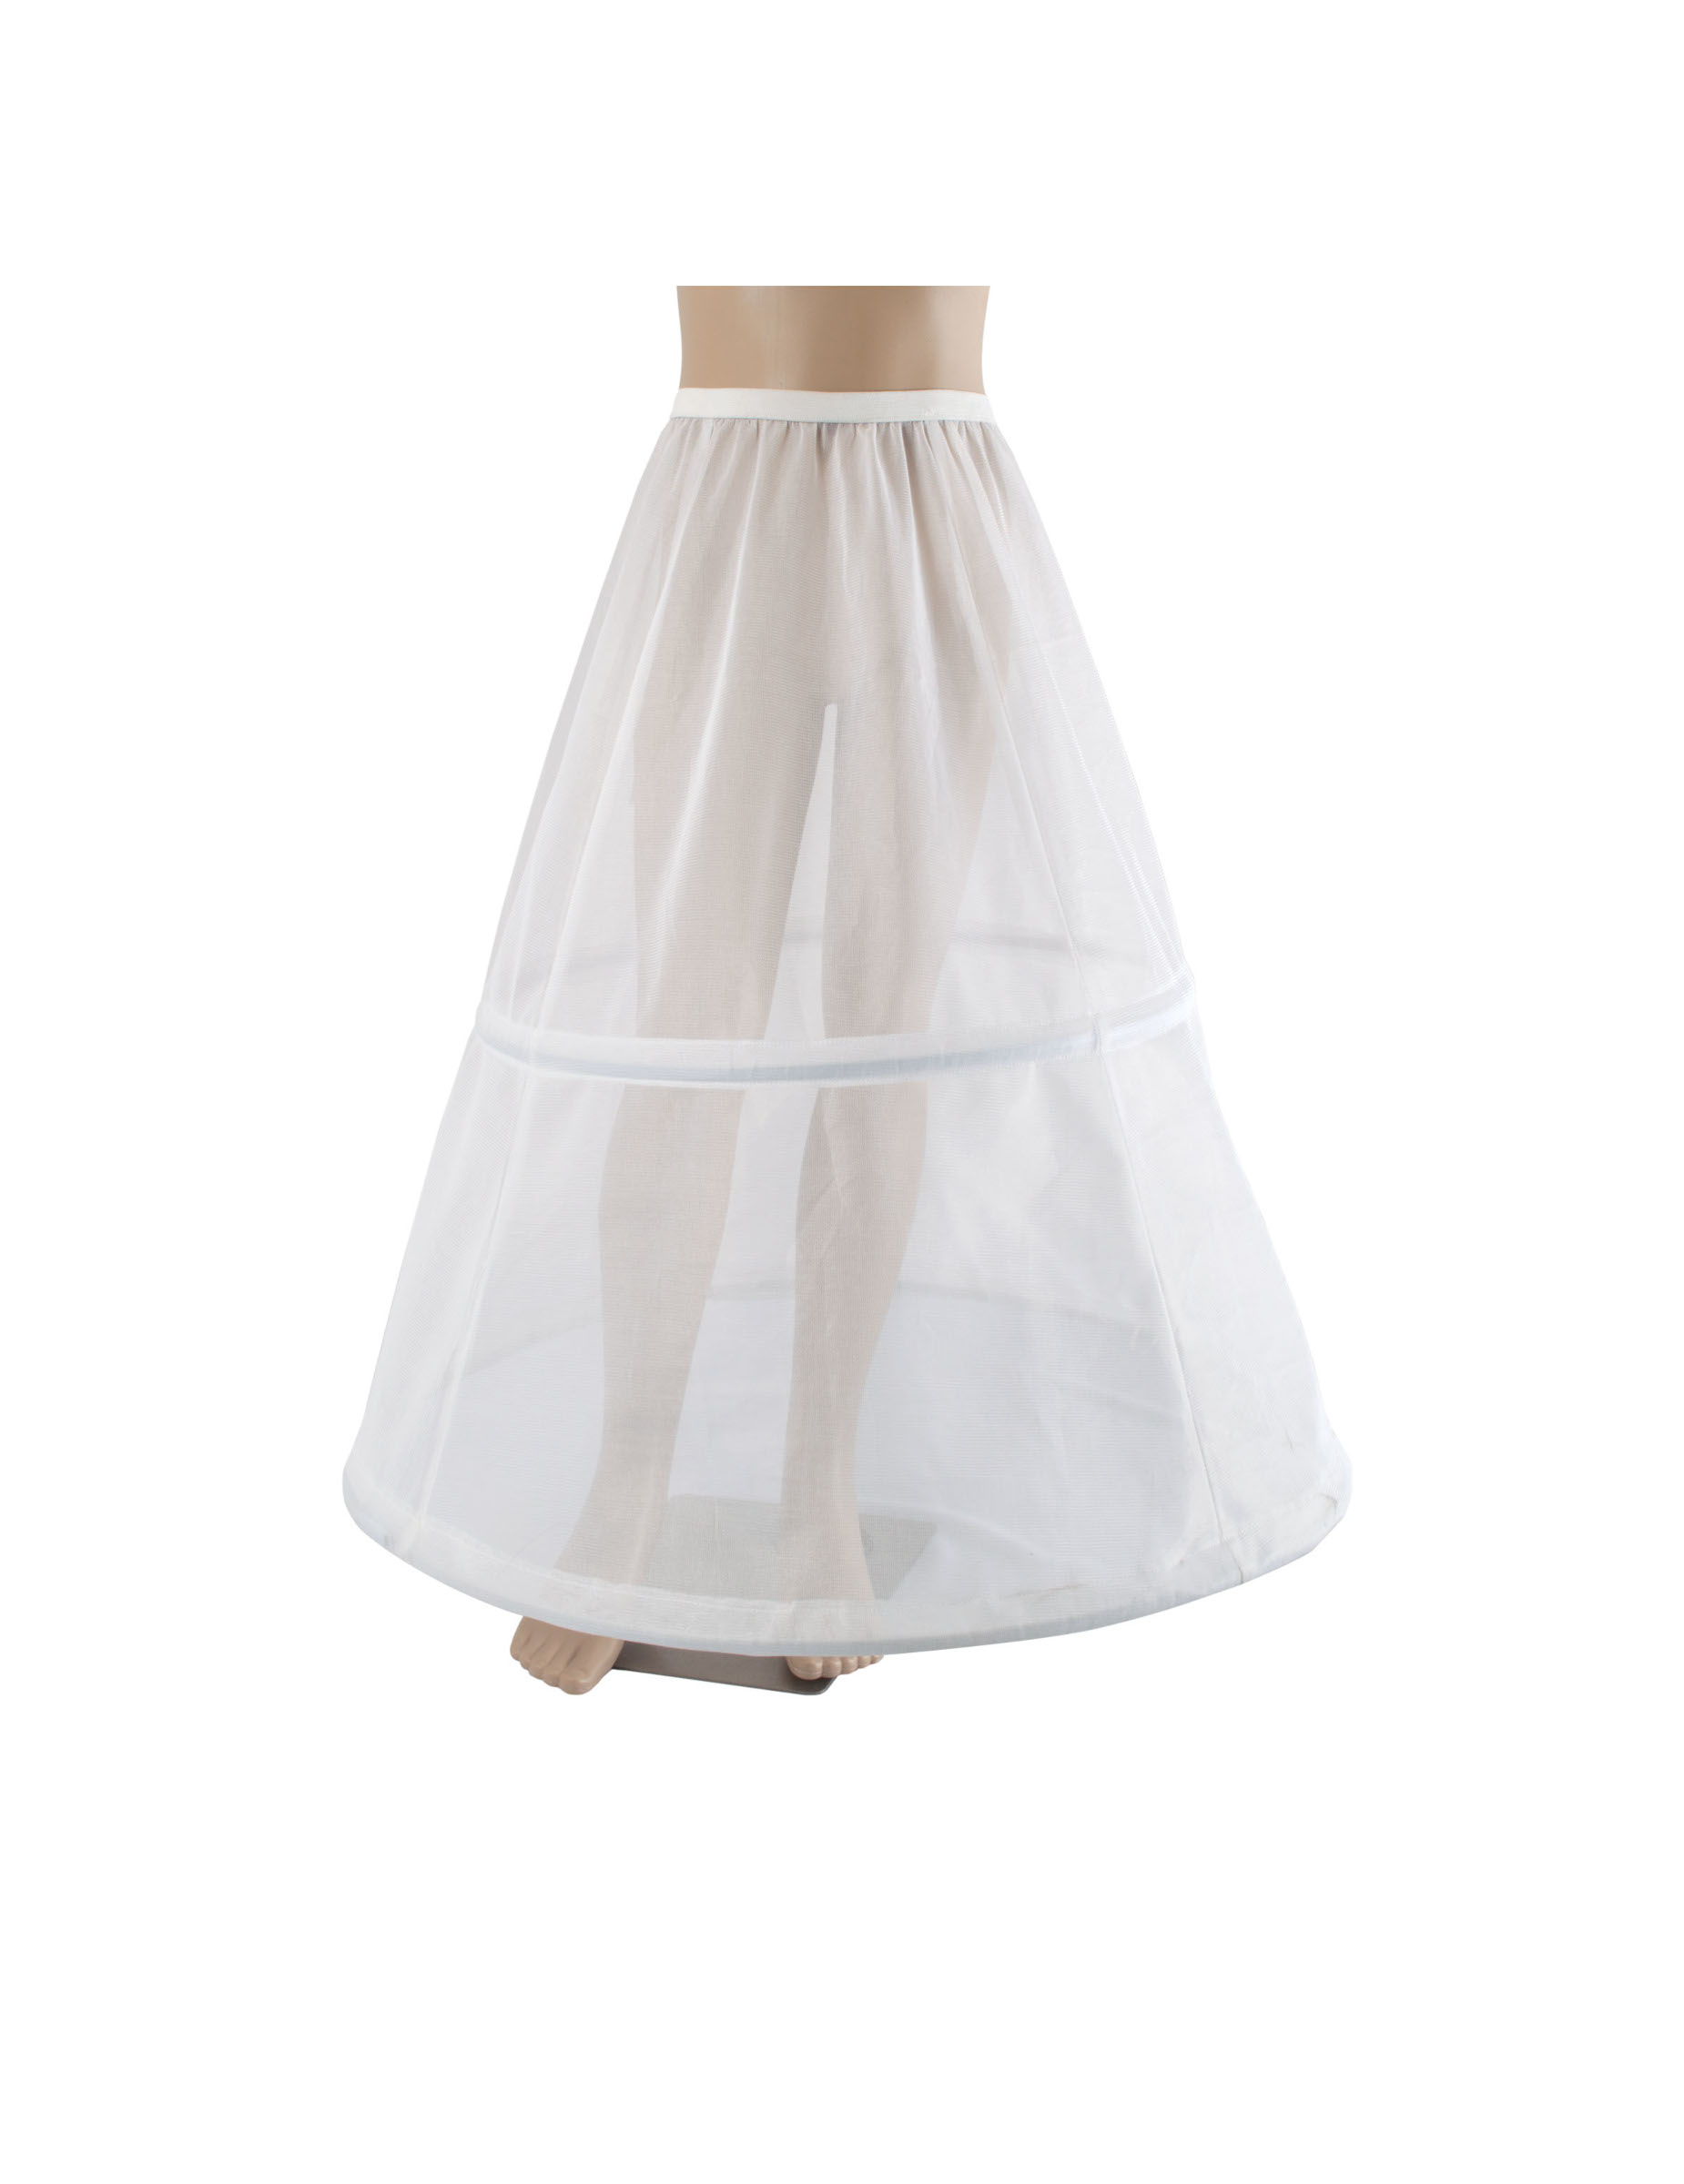 Kinder-Petticoat Kostüm-Accessoire weiss 67 cm von ESPA